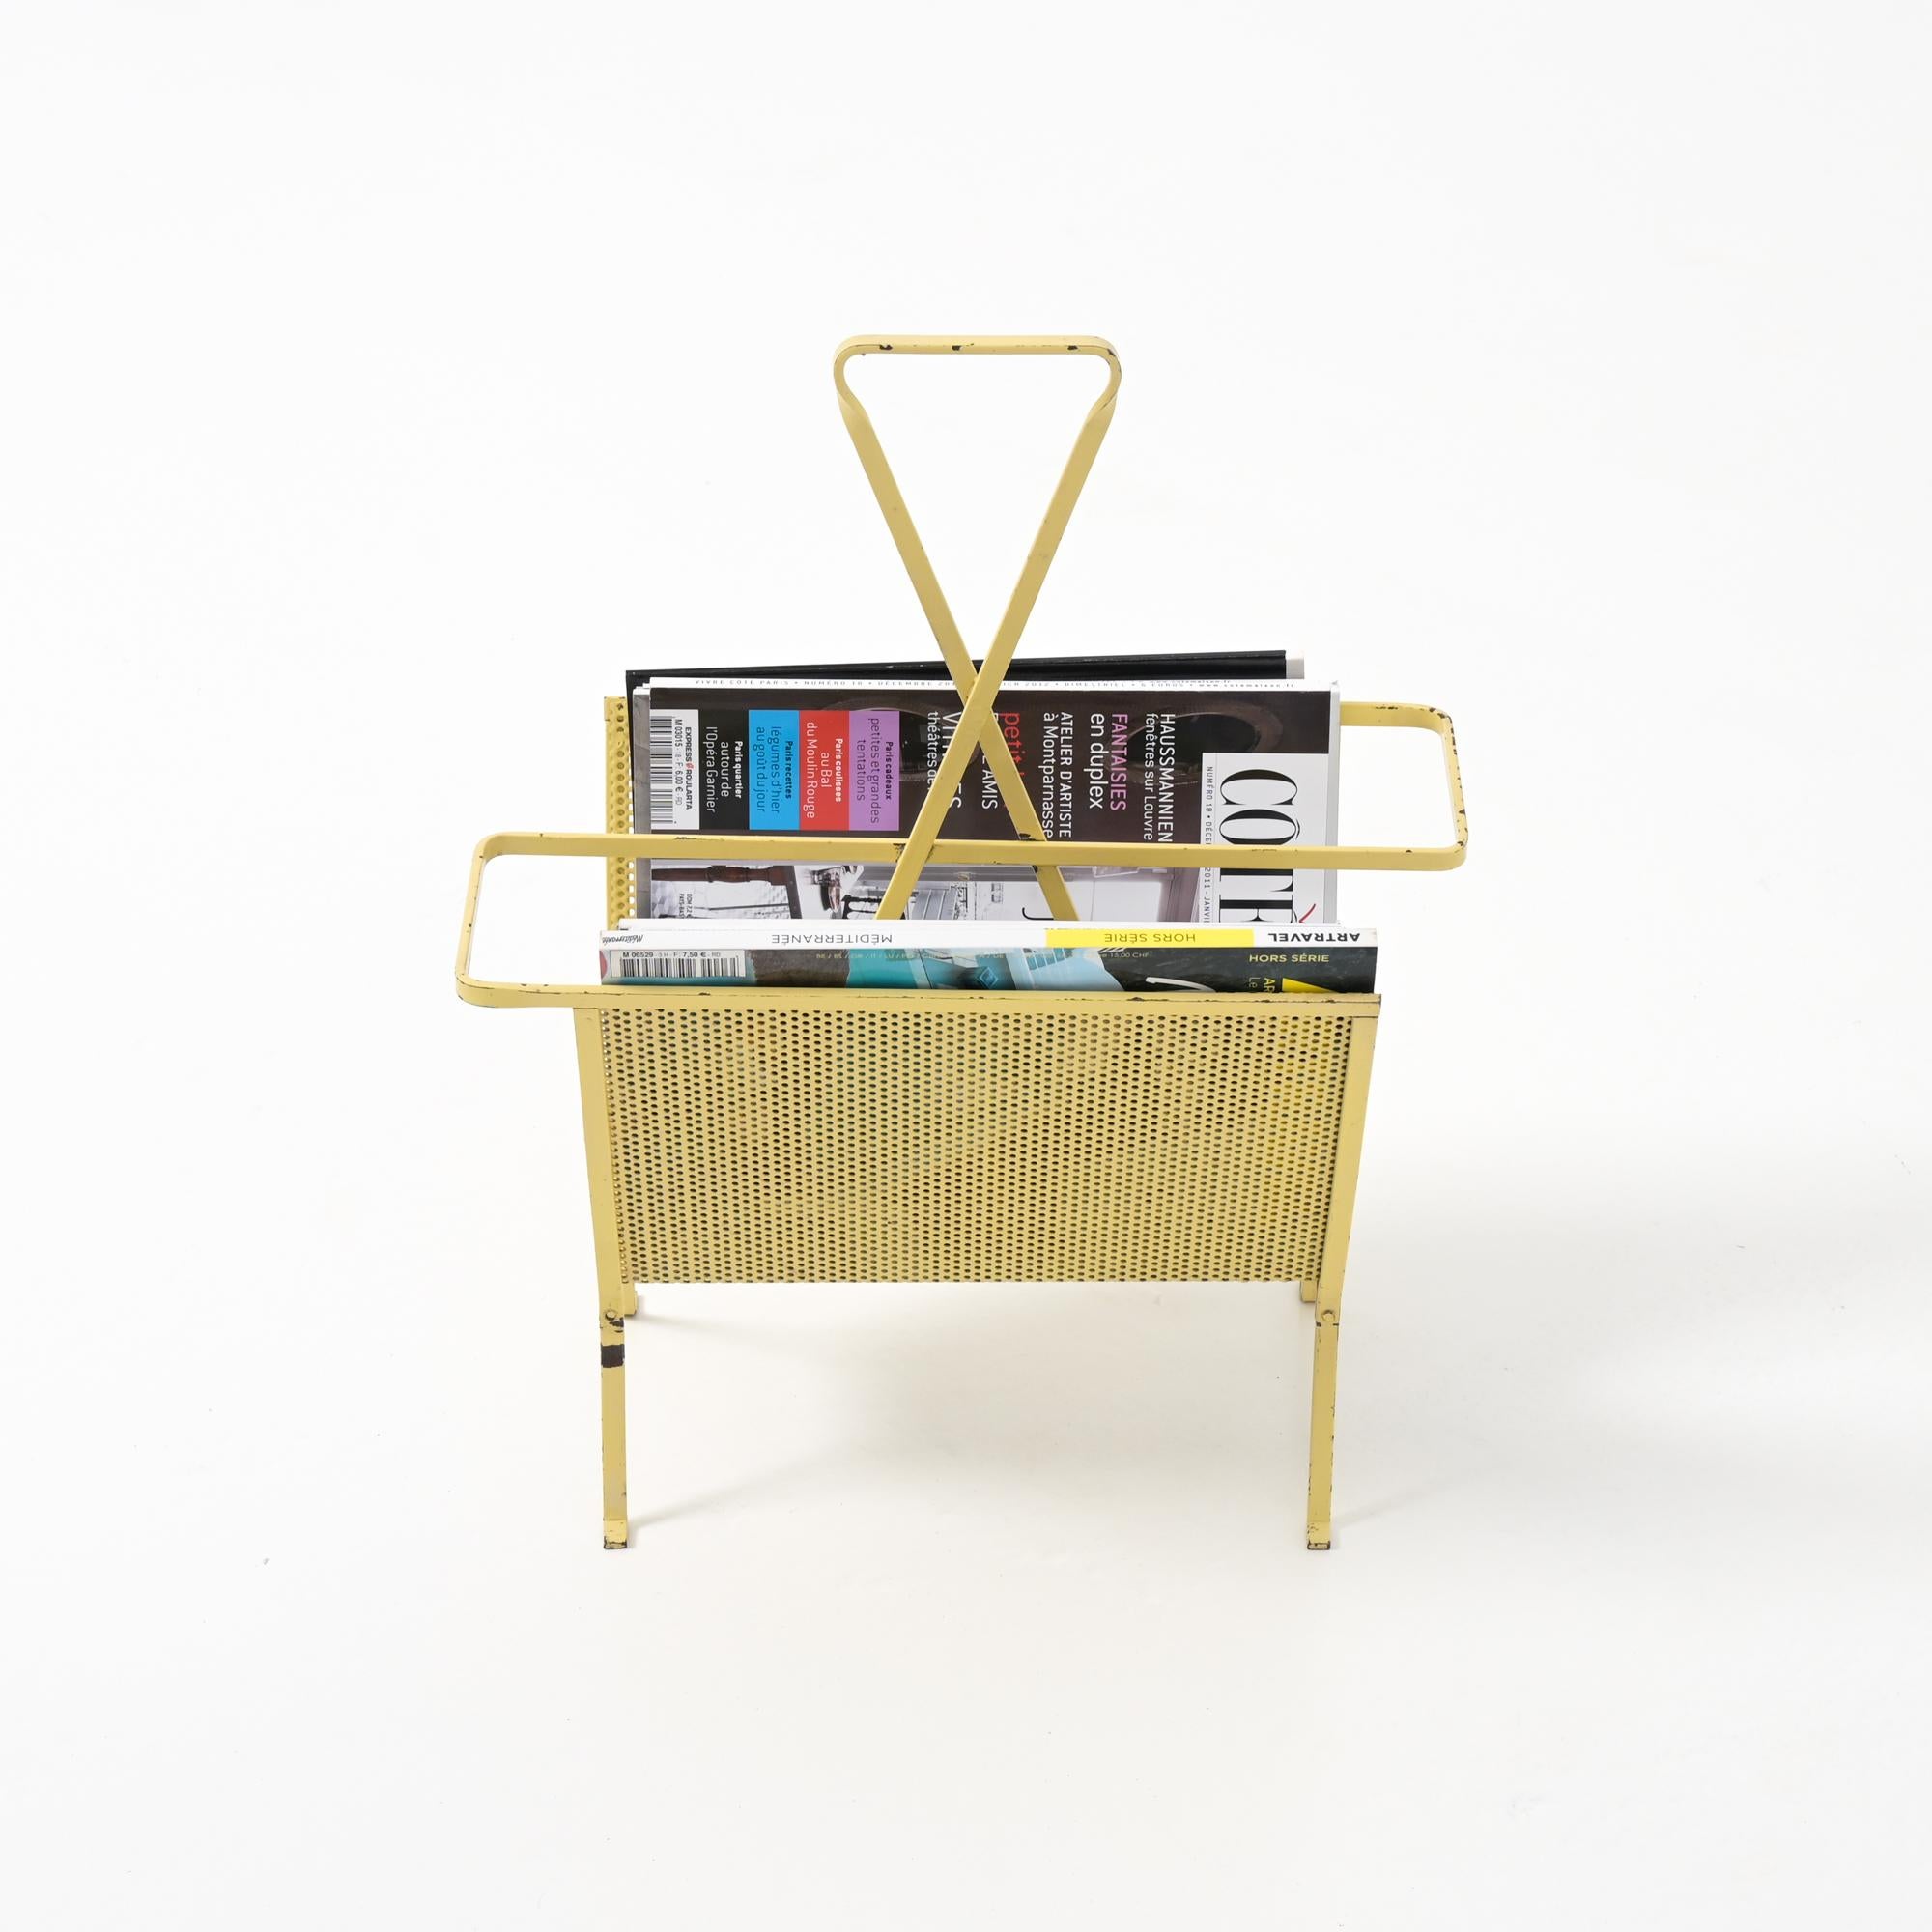 Dieser schlichte und elegante Zeitschriftenständer wurde in den 1950er Jahren von Mathieu Matégot (1910-2001) entworfen und von Artimeta hergestellt.

Der Ständer ist aus weichem, gelb lackiertem, gefaltetem und gelochtem Metall gefertigt. Die Form